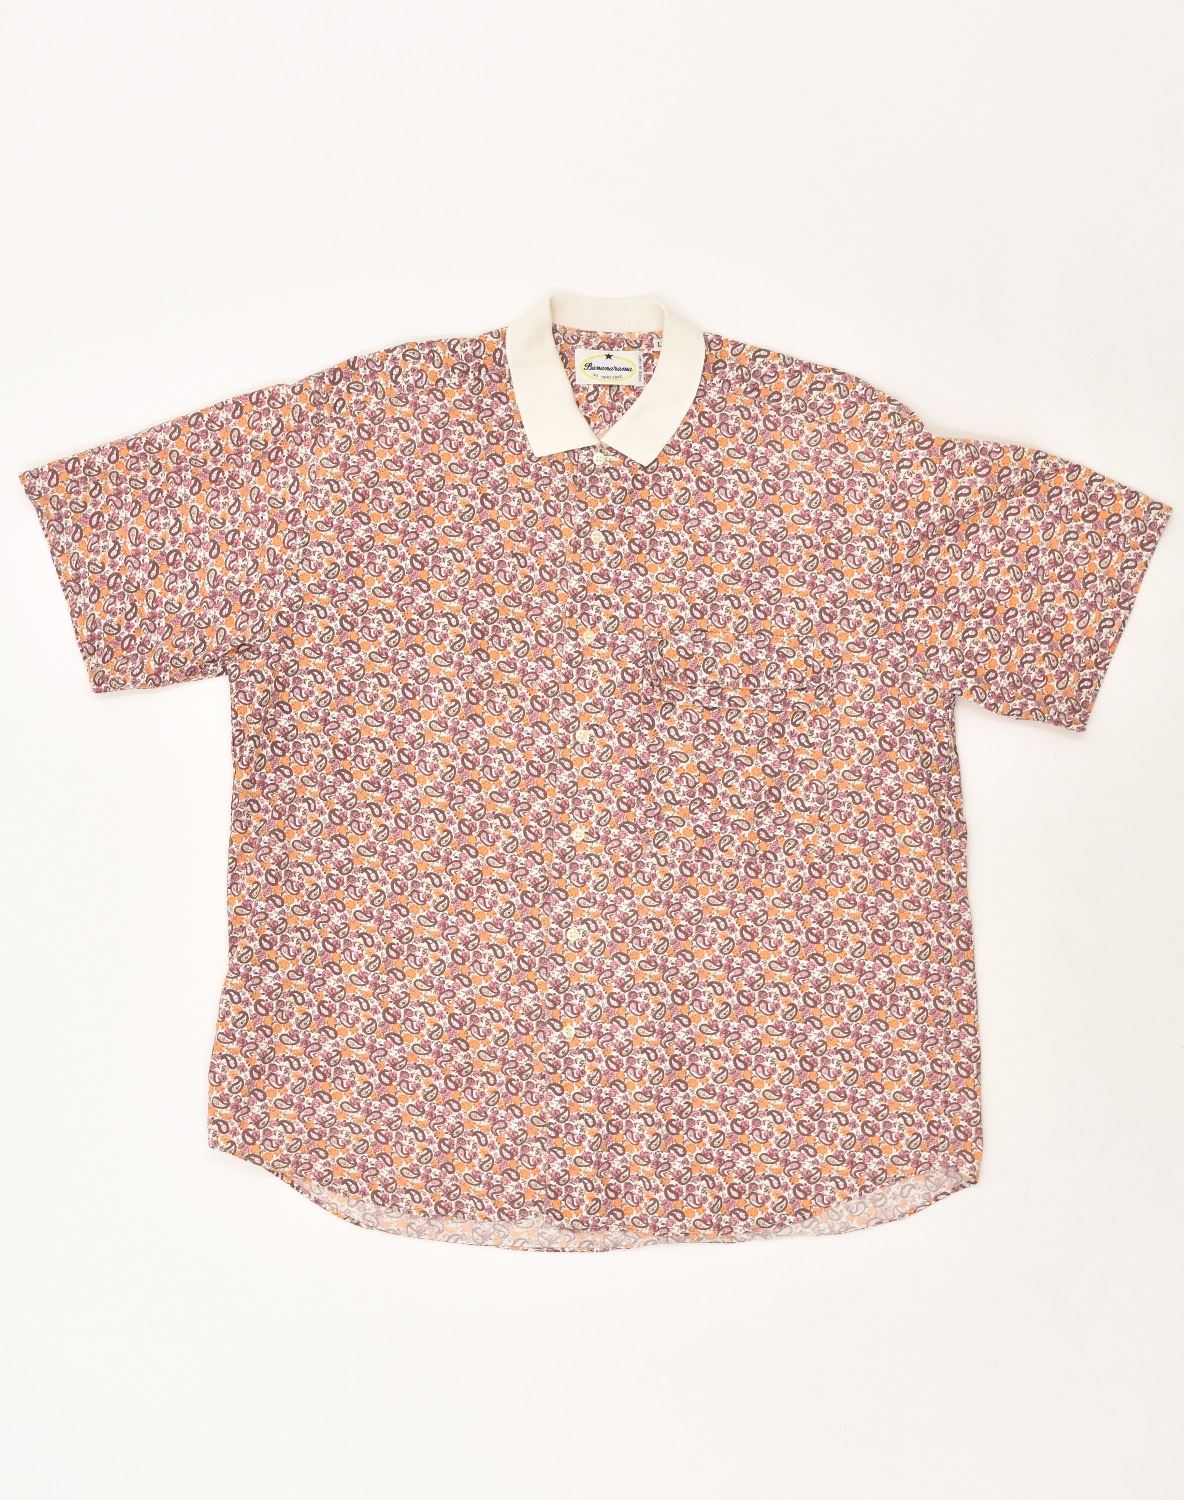 Męska koszula z krótkim rękawem VINTAGE, duża, brązowa, bawełniana paisley | Vintage Vintage | Oszczędność | Używany rocznik | Odzież używana | Mesyna Hembry